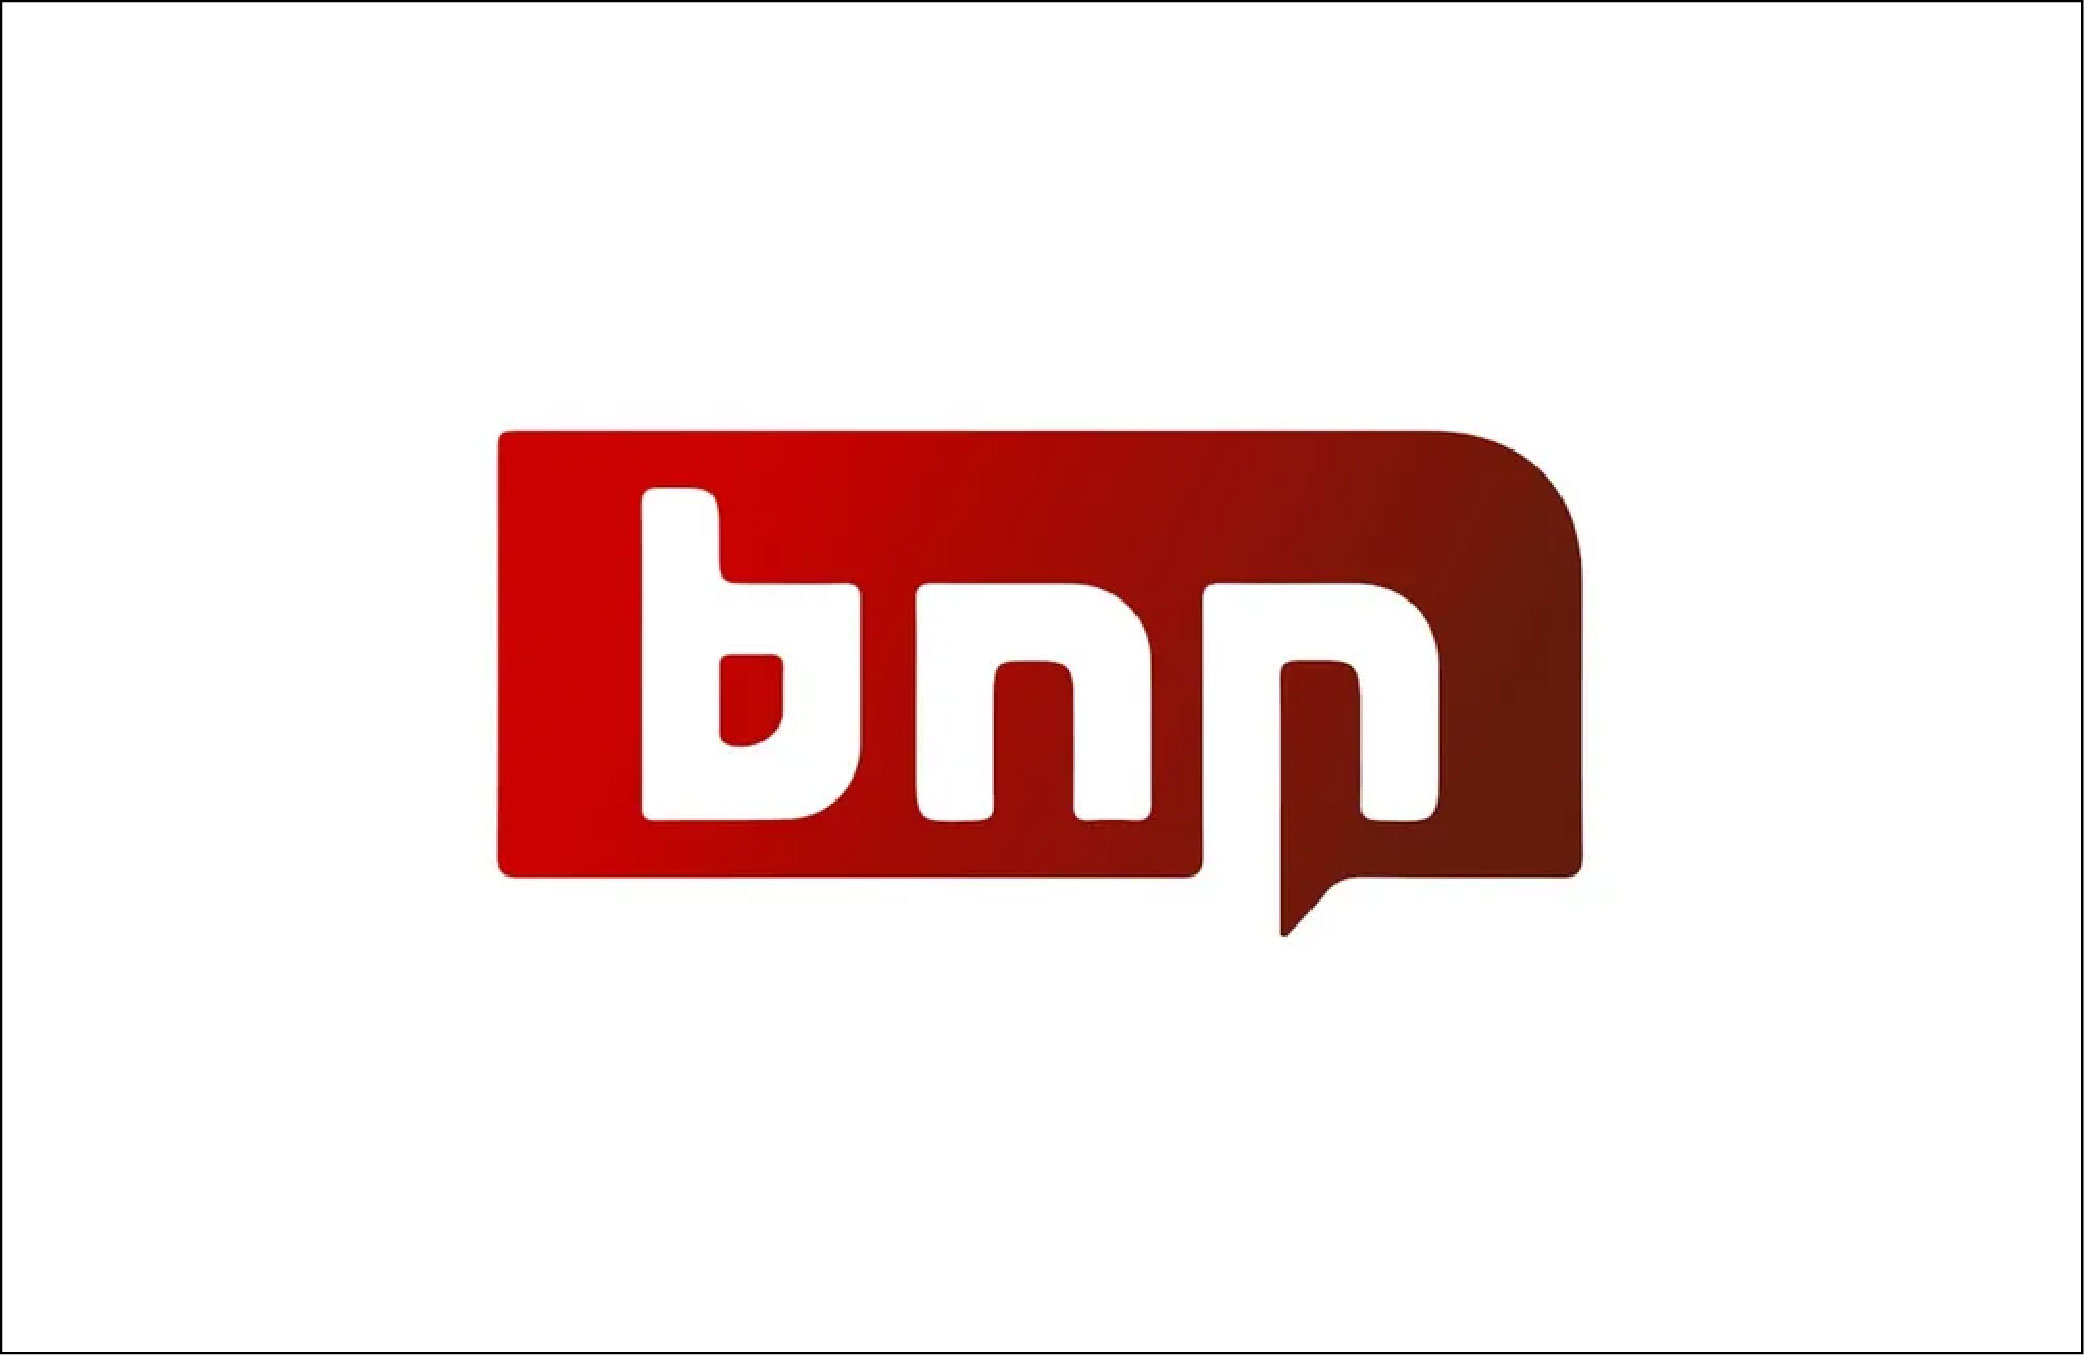 BNN Breaking press release logo